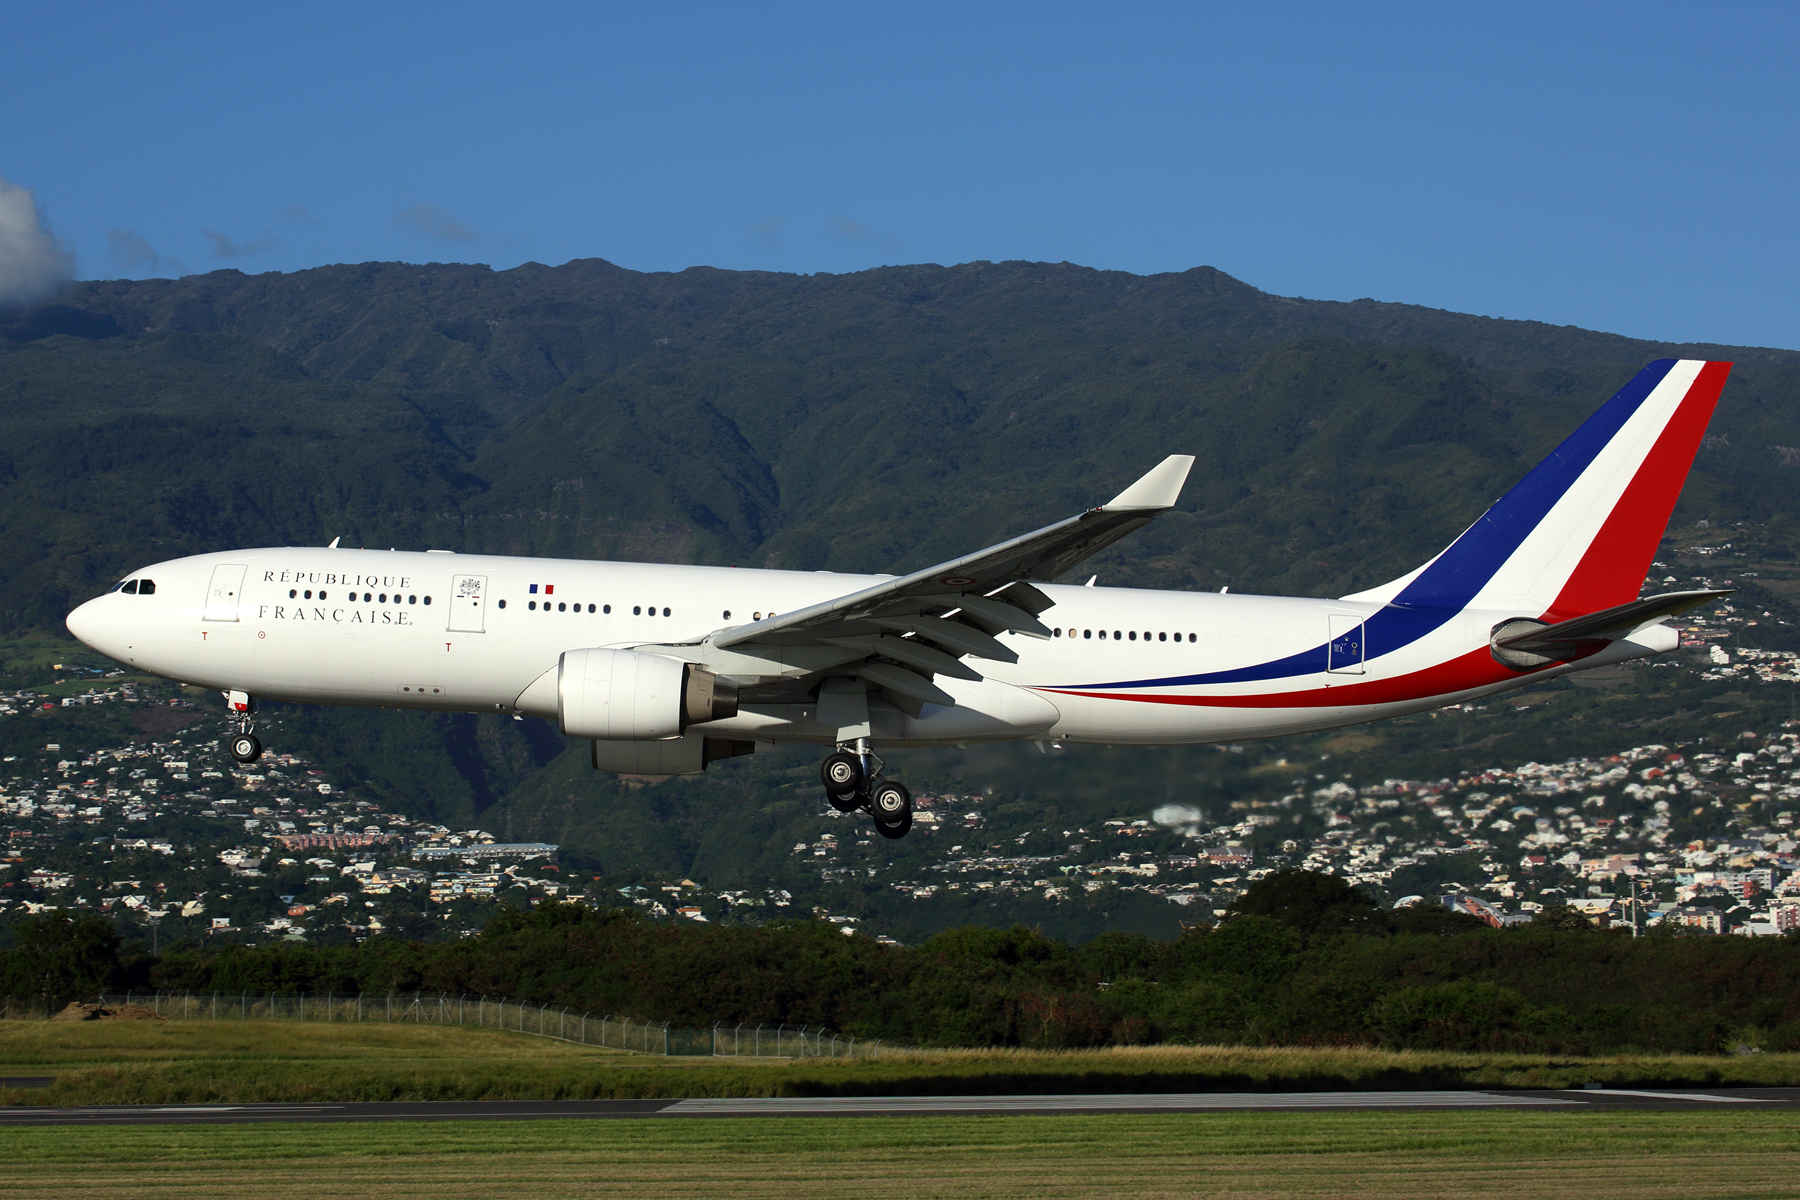 REPUBLIC FRANCAISE AIRBUS A330 200 RUN RF  5K5A2041.jpg